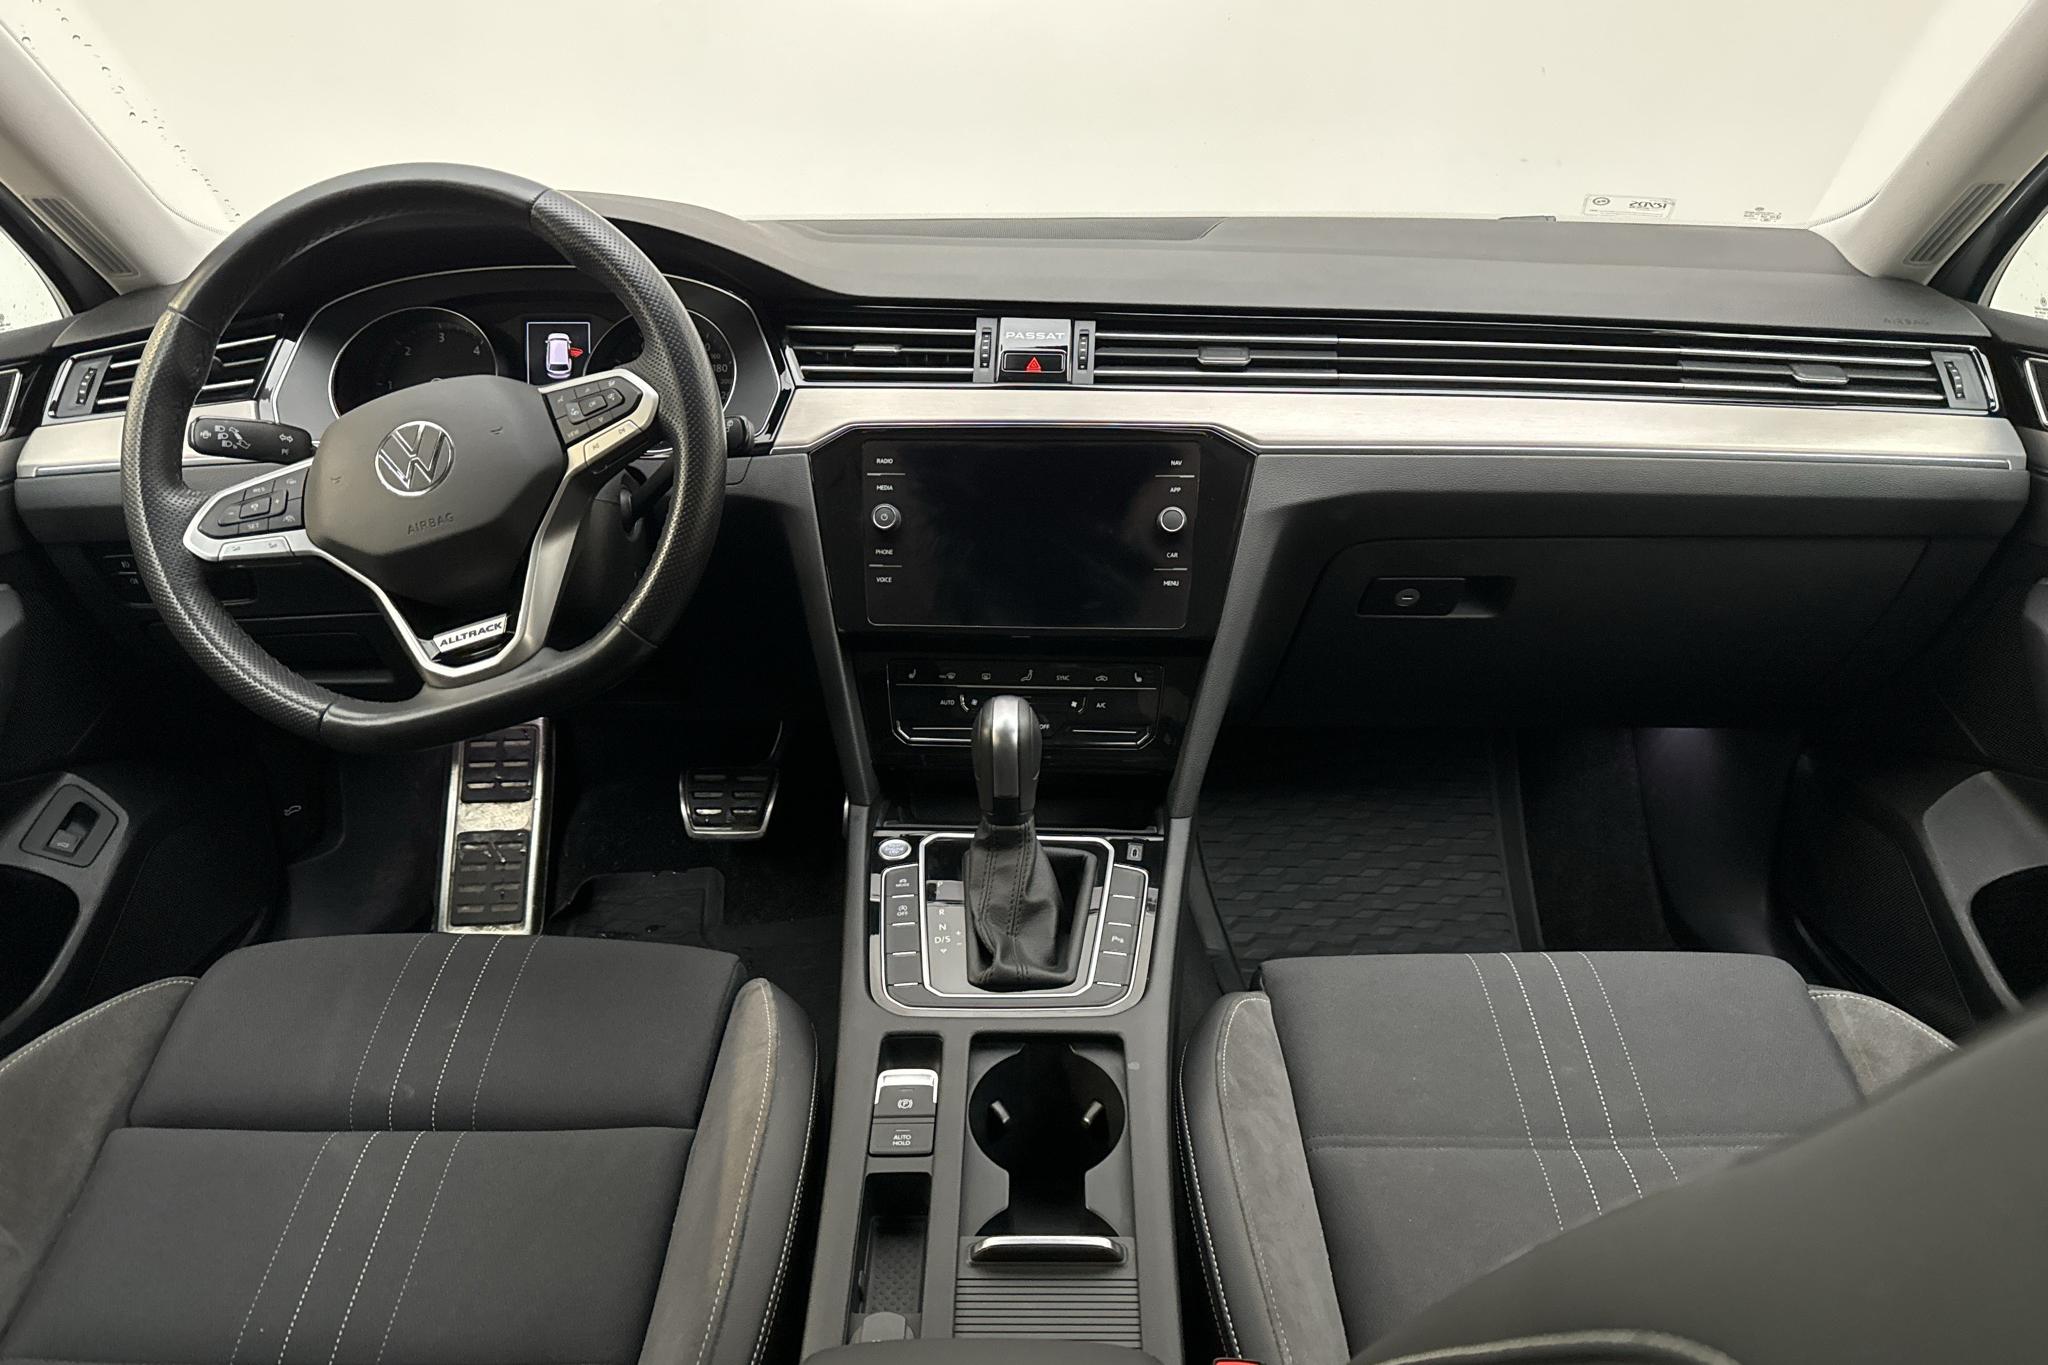 VW Passat Alltrack 2.0 TDI Sportscombi 4MOTION (190hk) - 100 290 km - Automaattinen - hopea - 2021